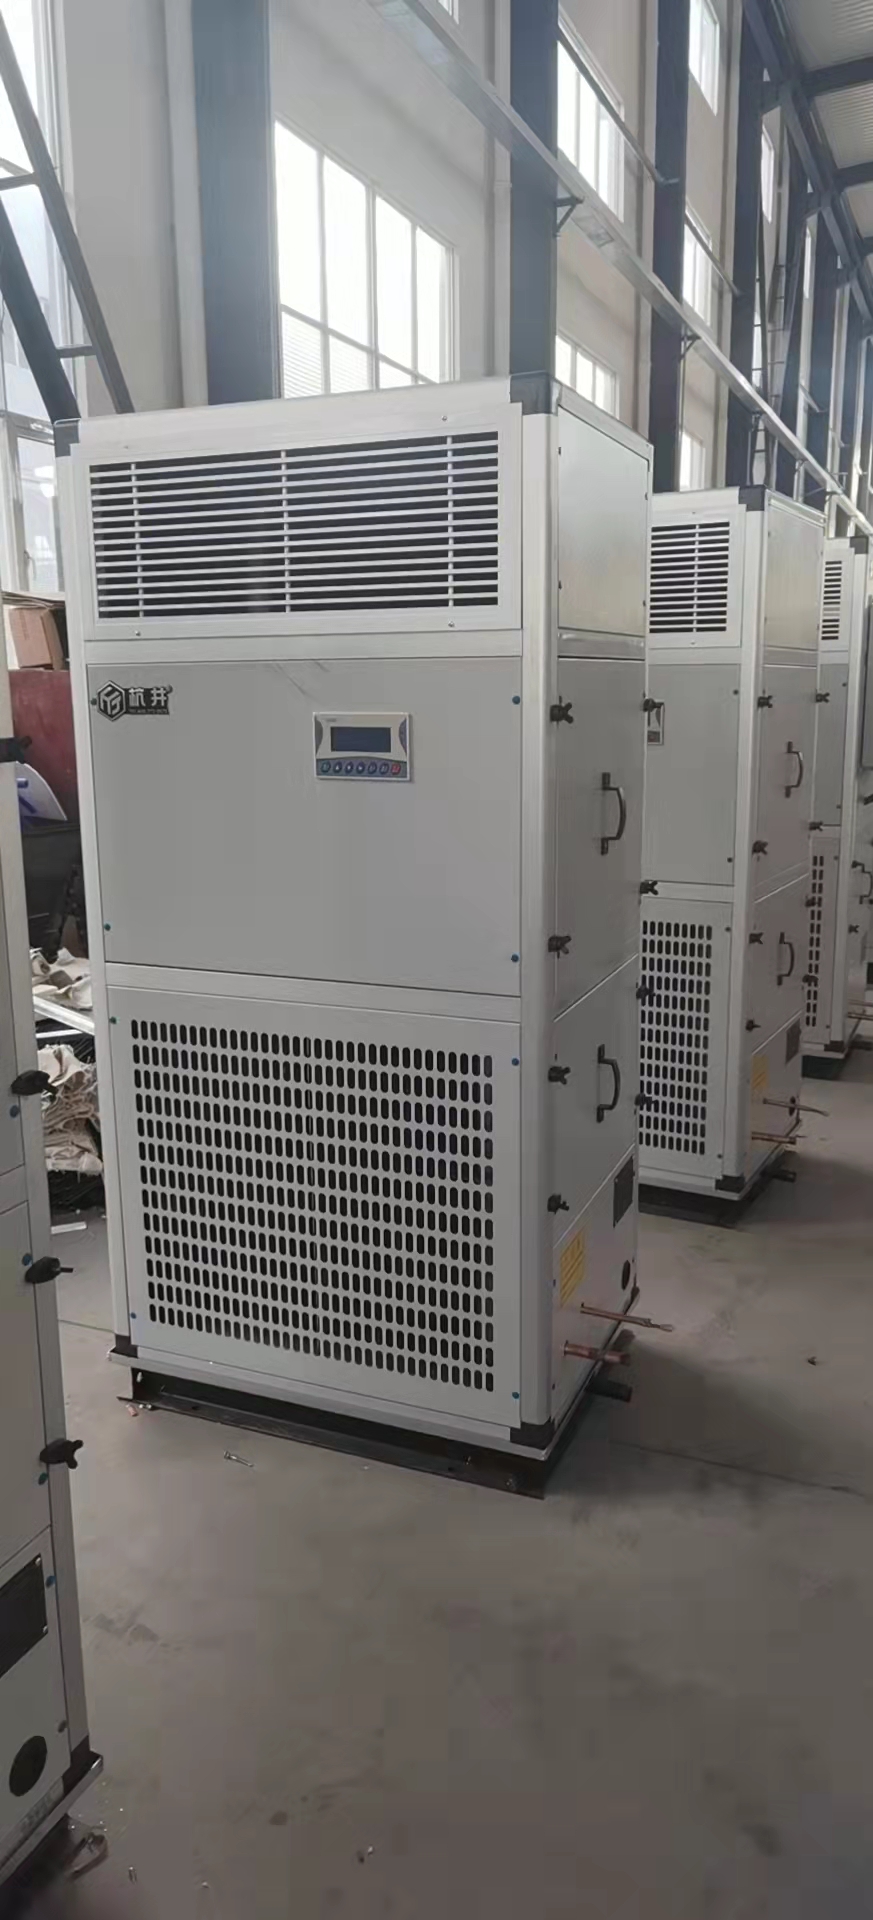 杭井 8P风冷单冷柜机(R410A)，LF22SONP(侧出风带风帽)，不含安装及辅材。